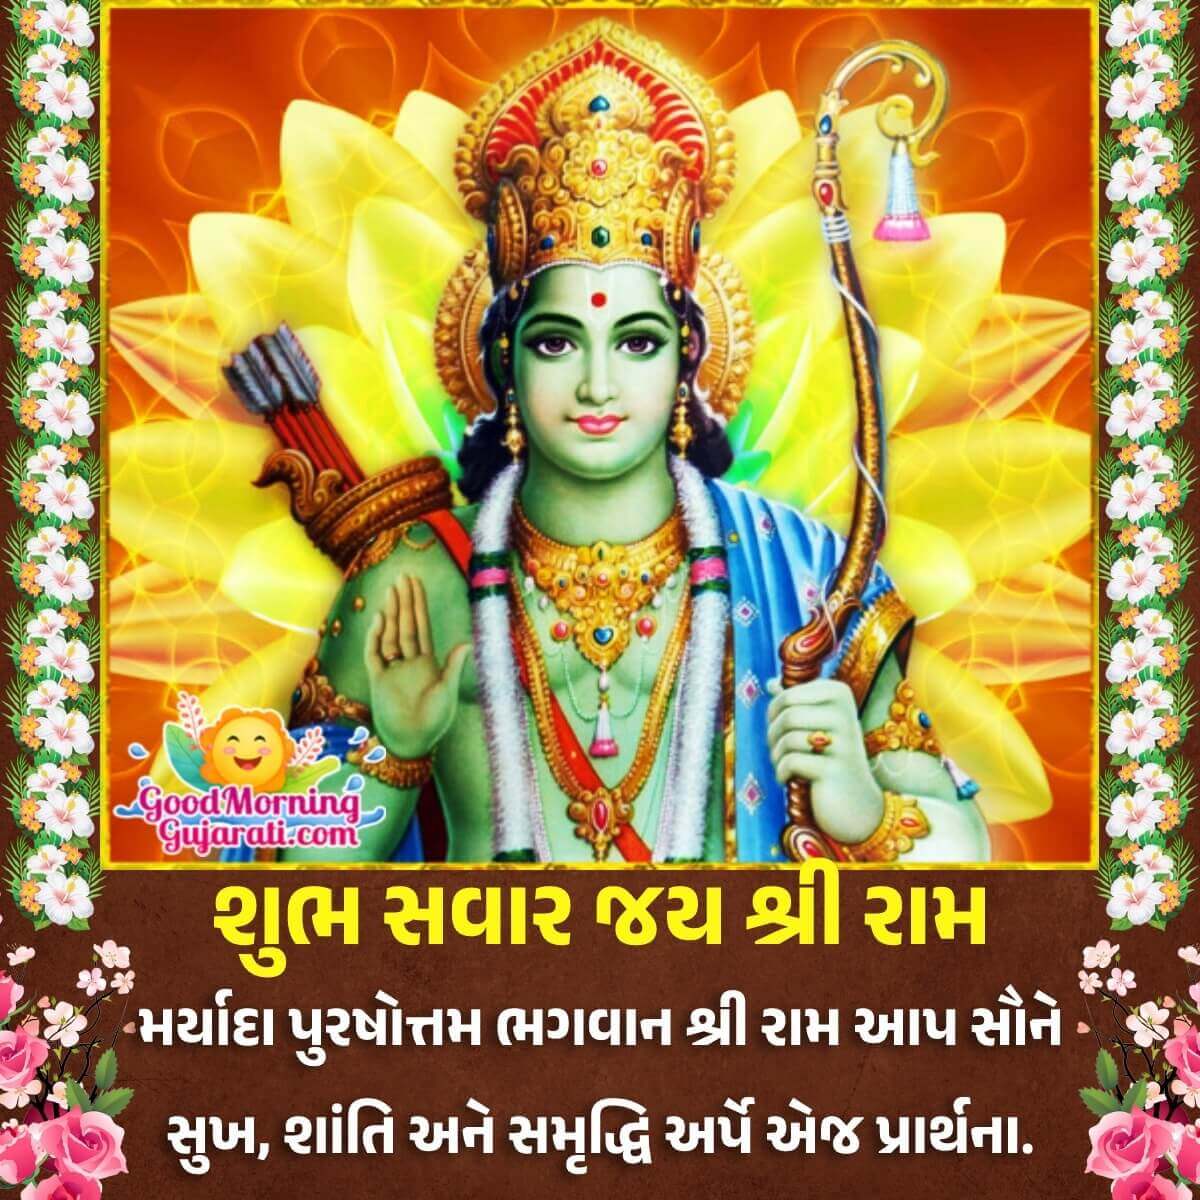 Good Morning Shri Ram Gujarati Images